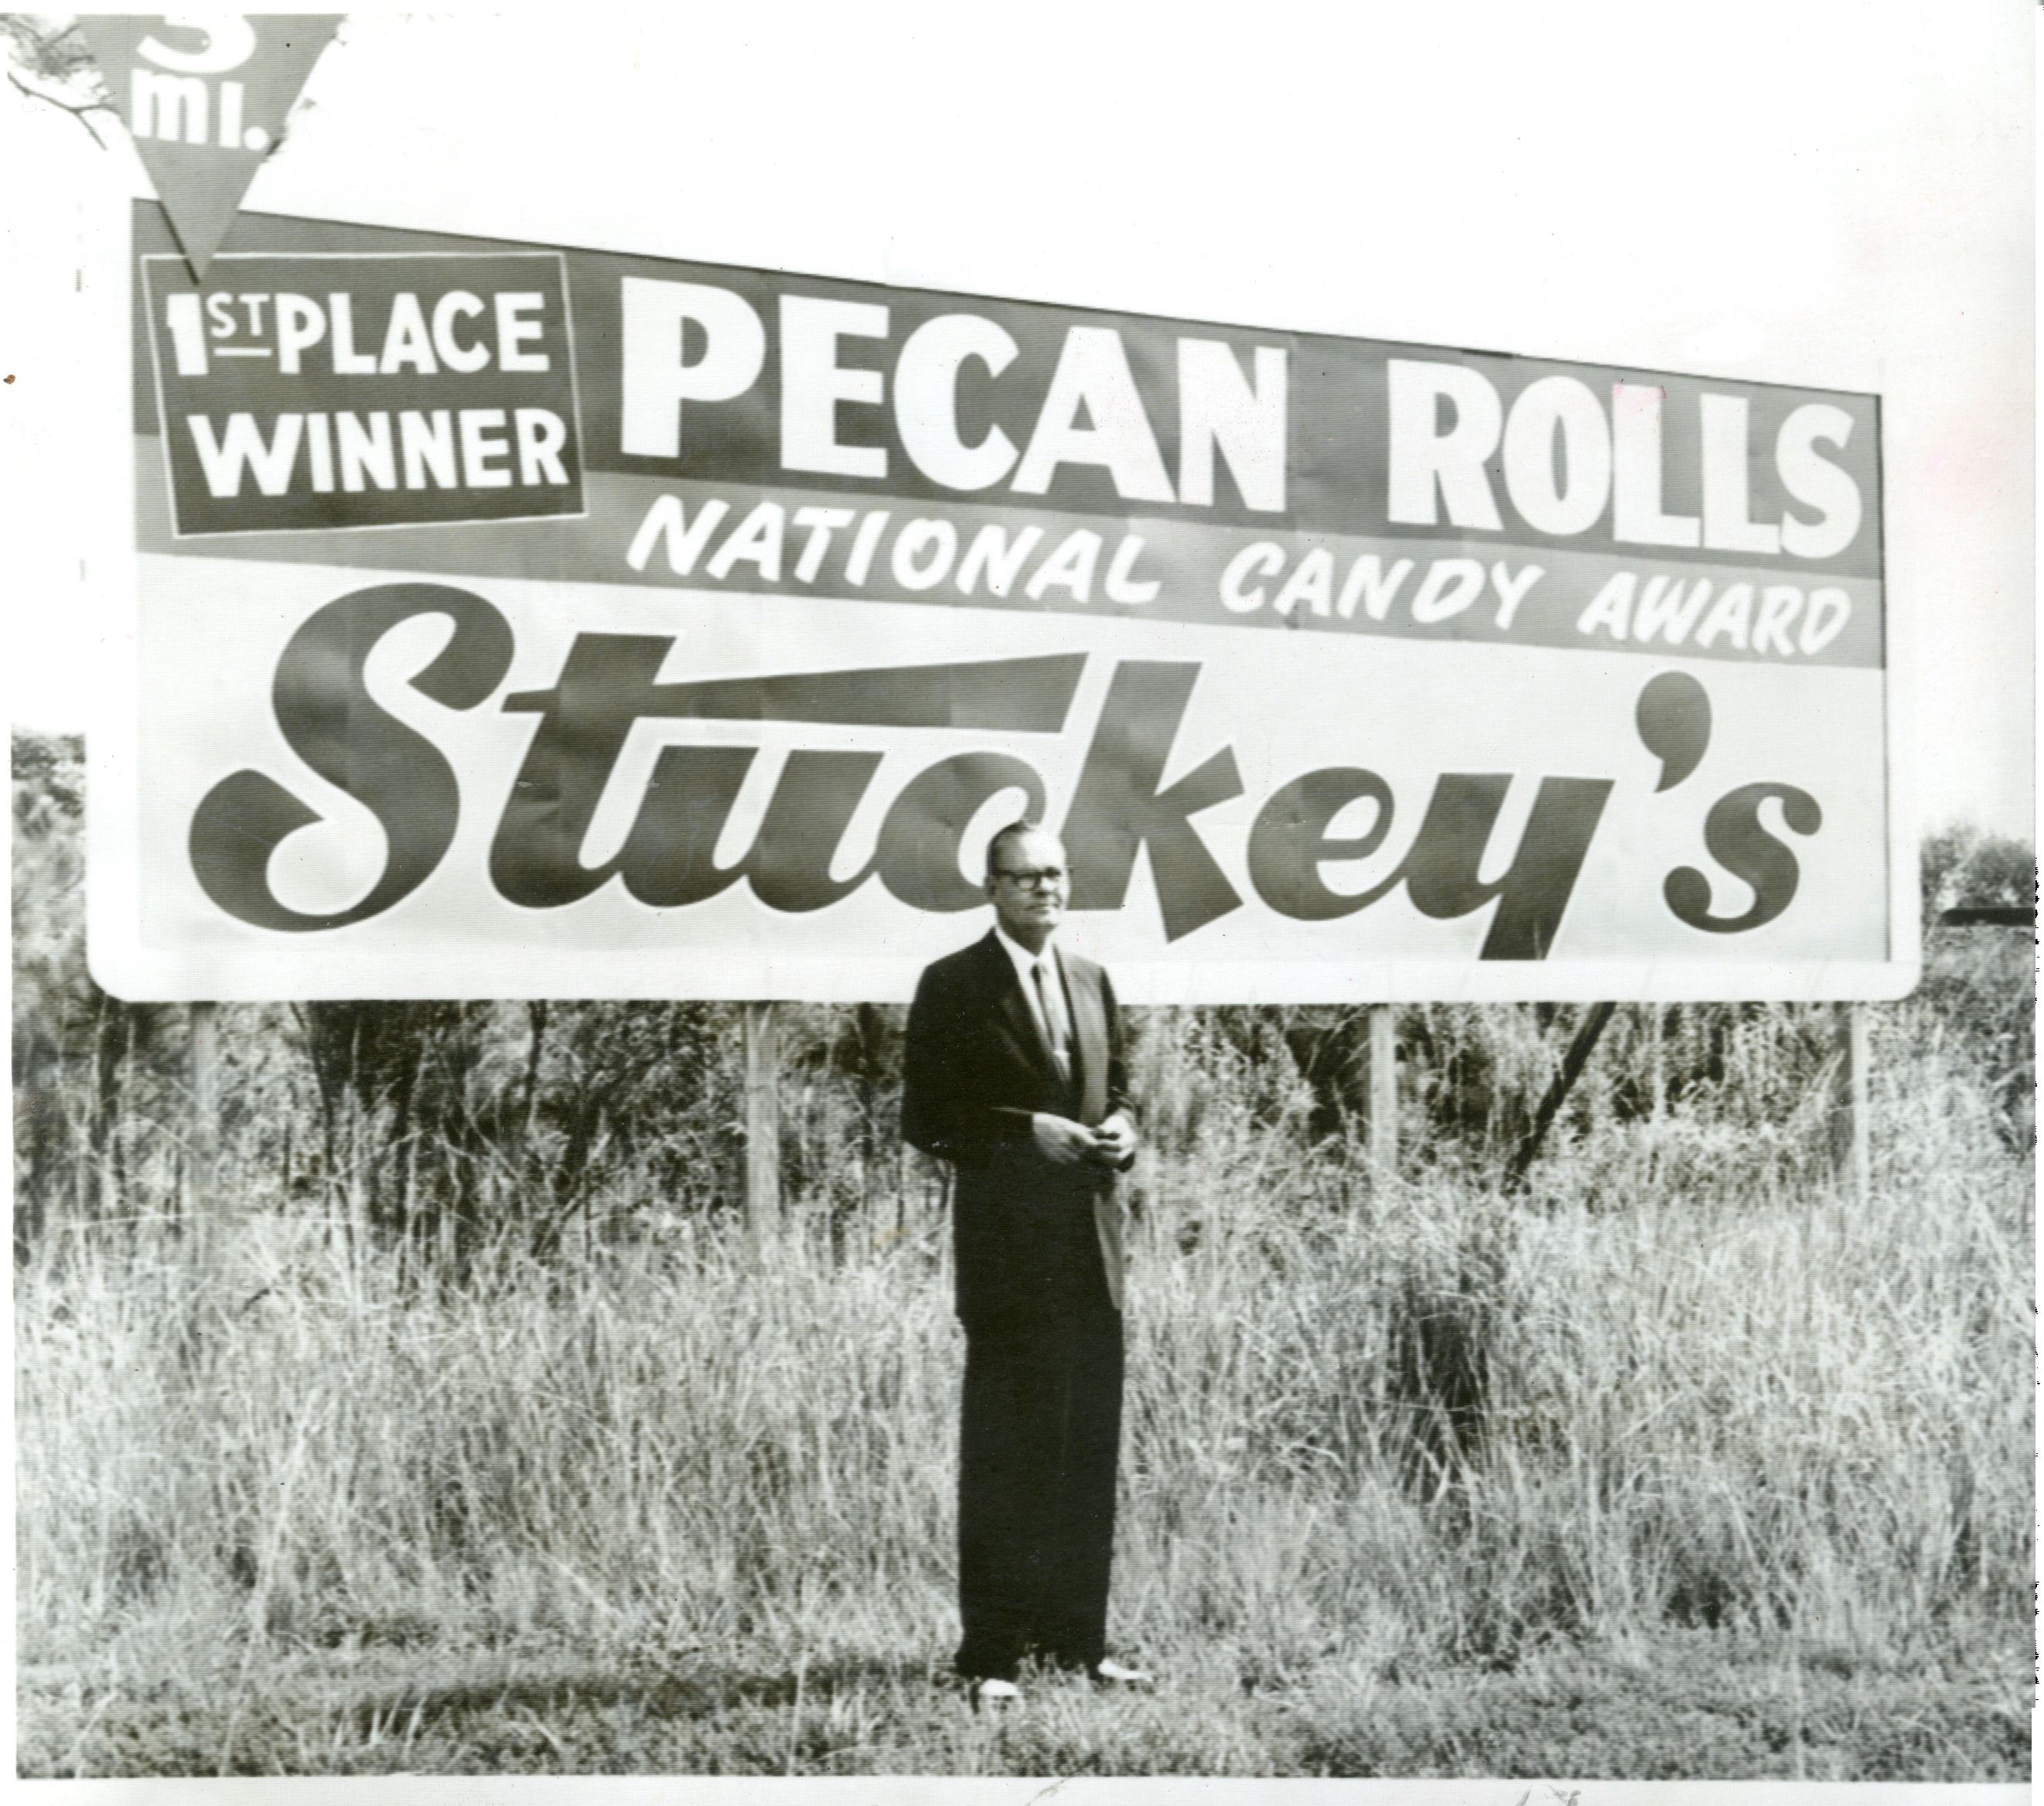 Stuckey’s: devolver el viaje por carretera favorito de la familia a sus raíces - 11